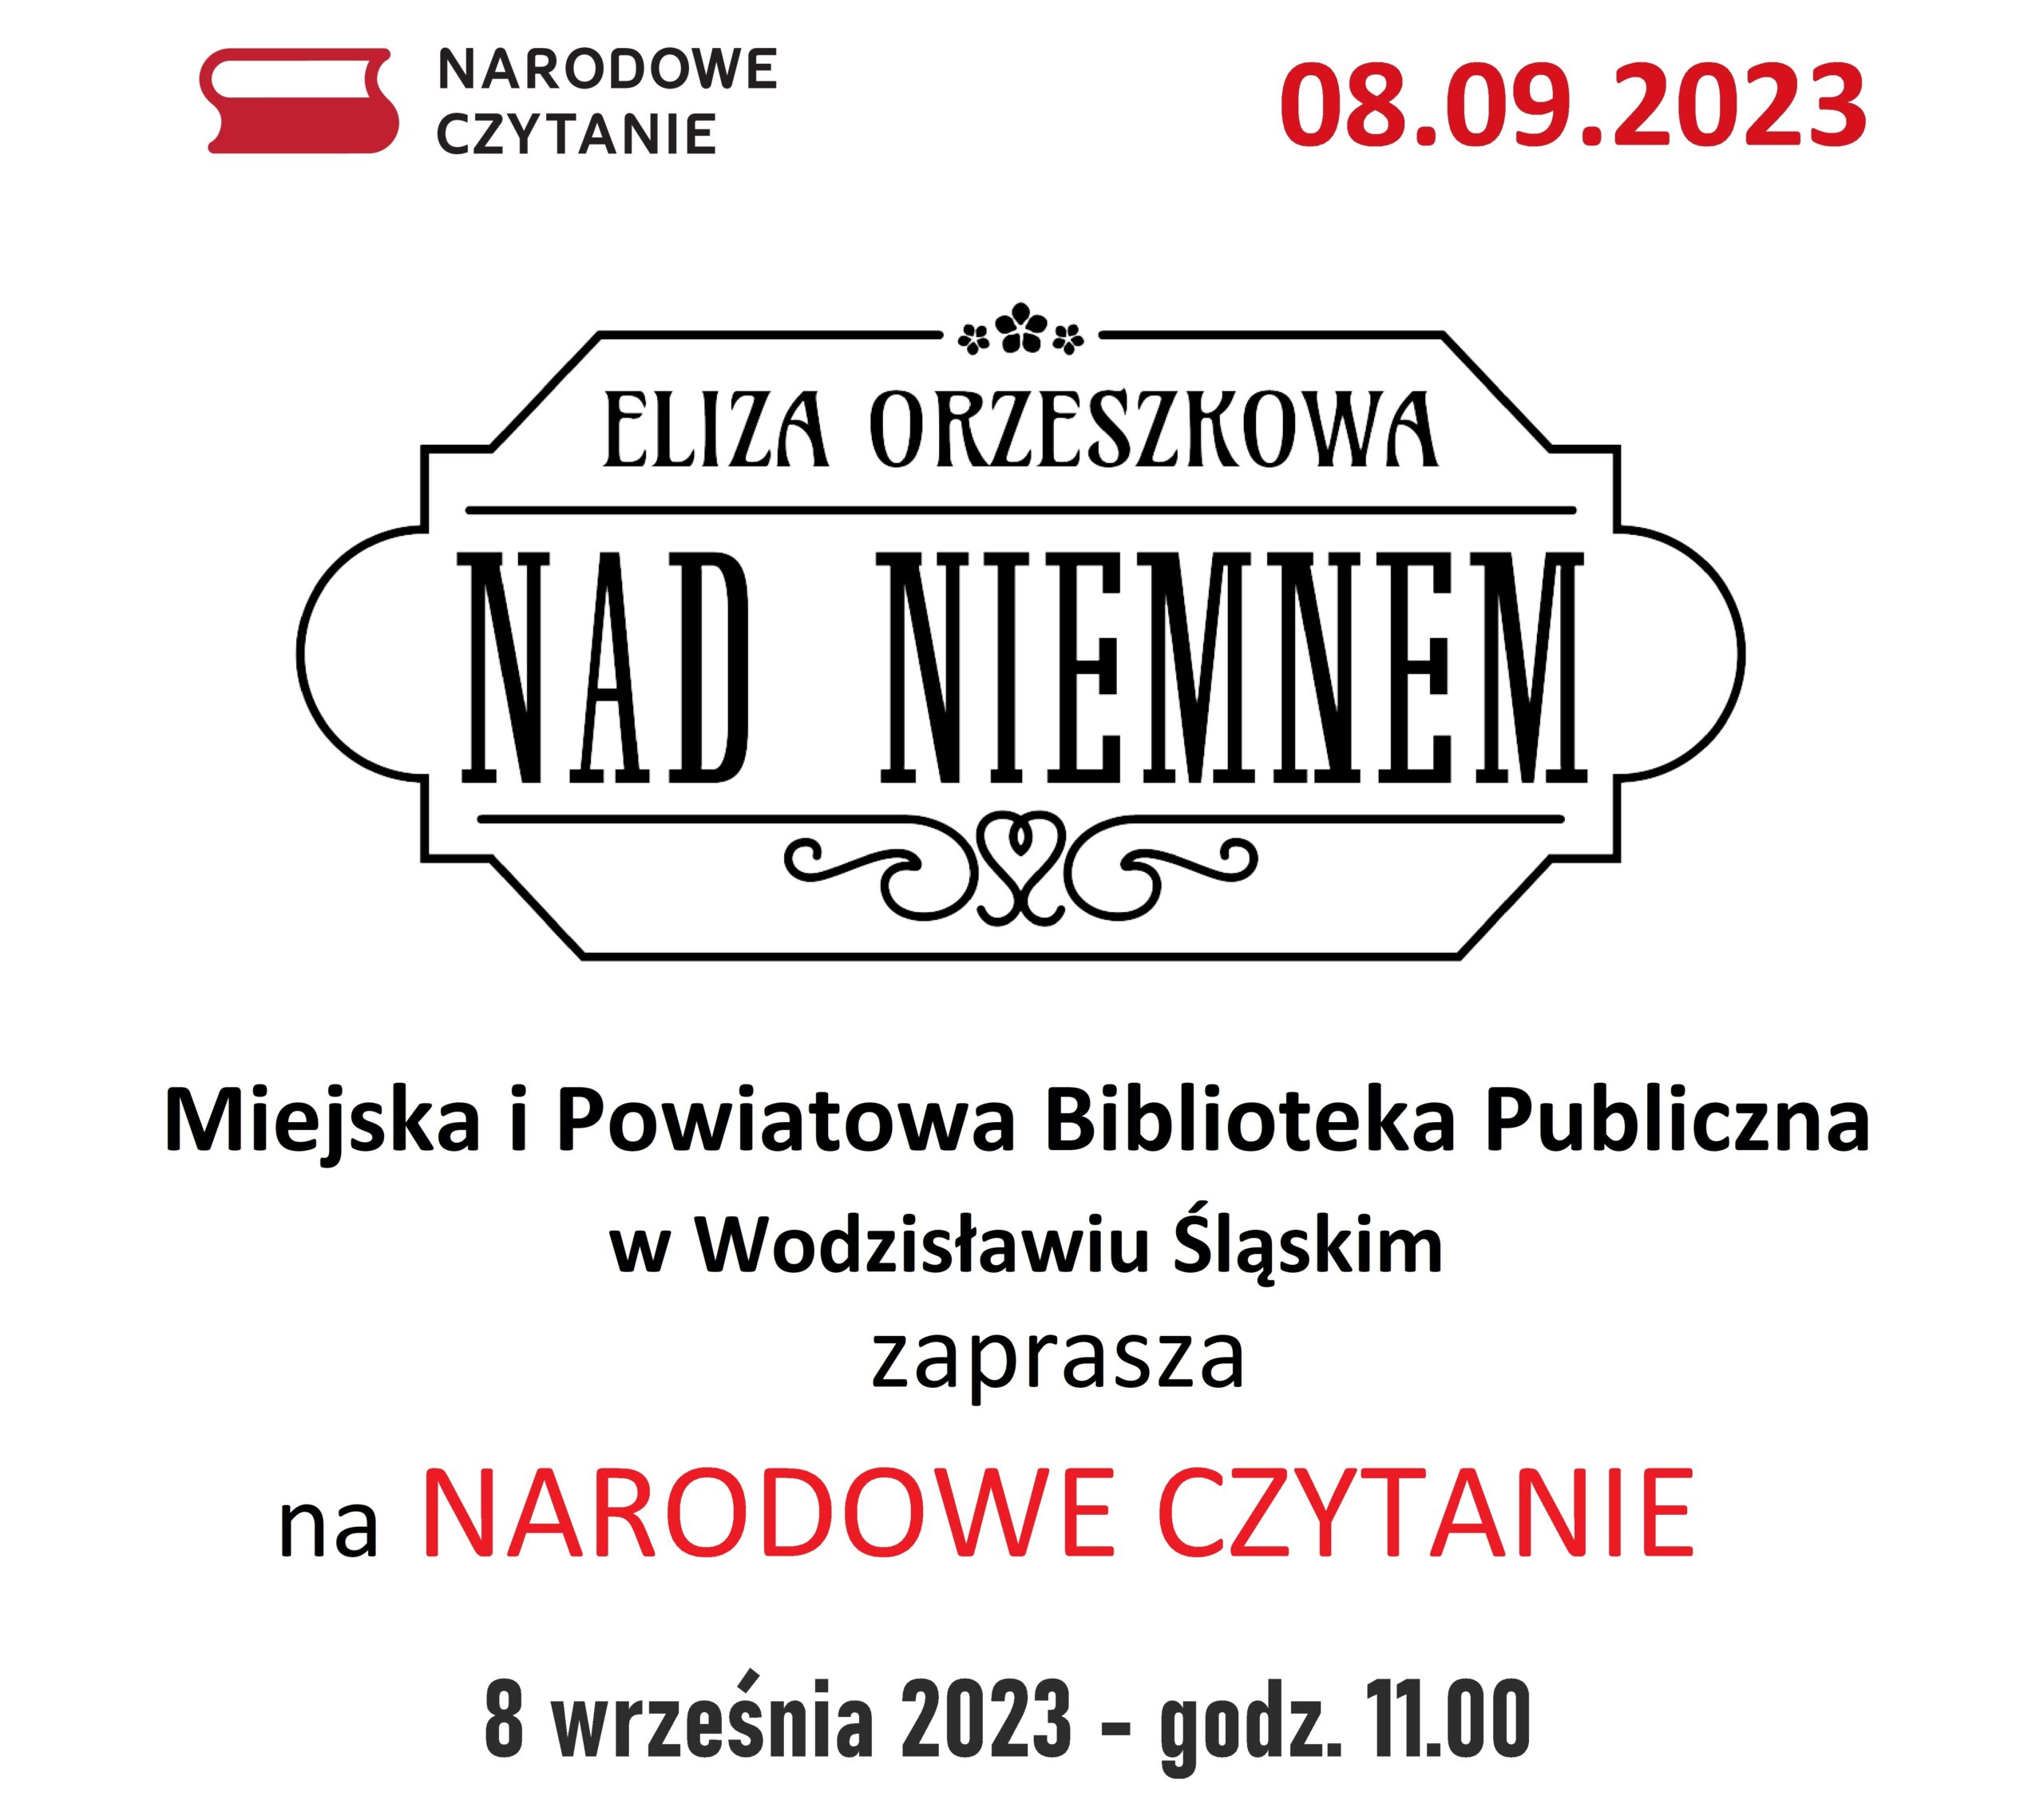 Plakat NC 2023 - 1.cdr